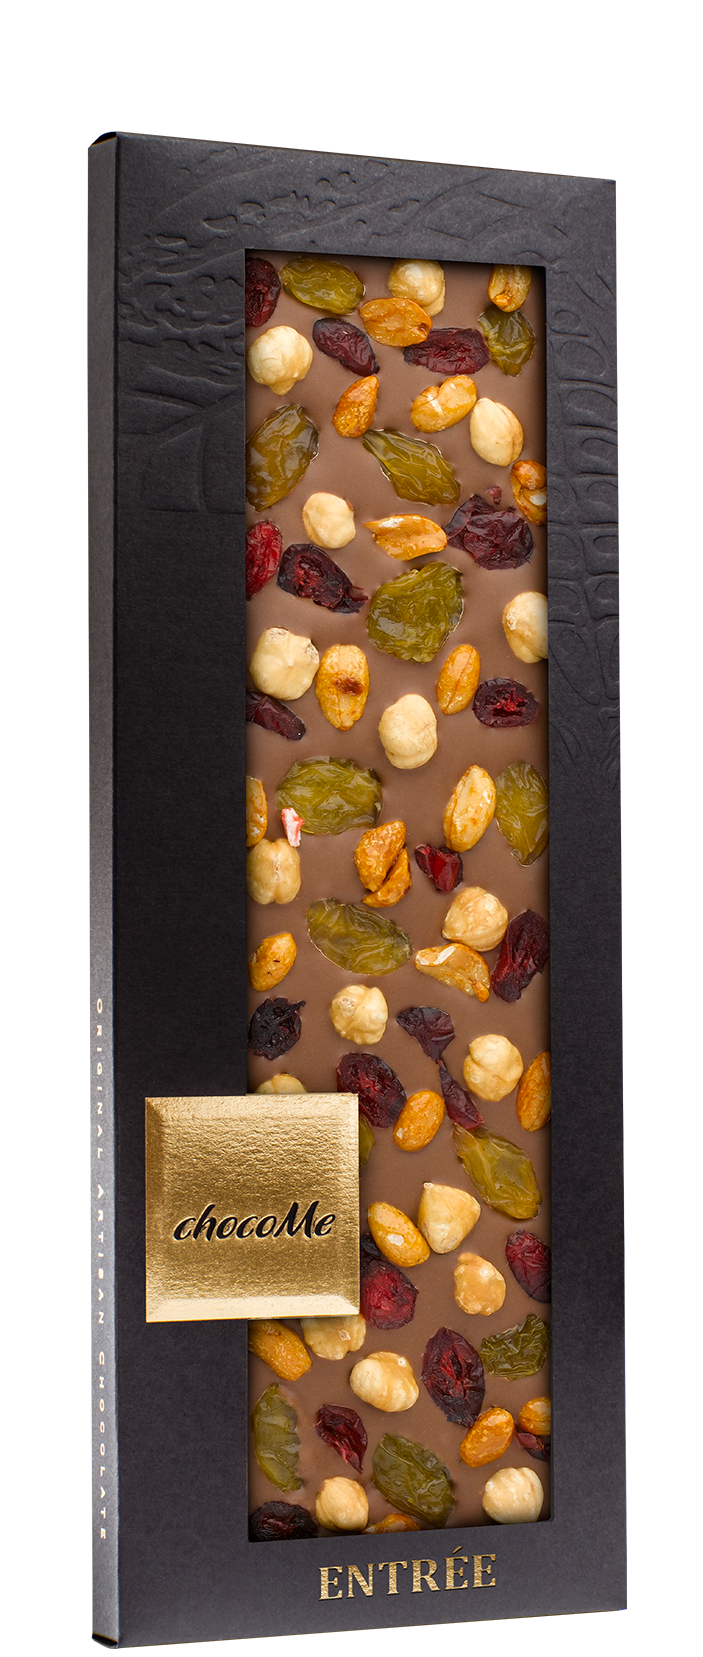 MG114 Mliječna čokolada sa zlatnim grožđicama, brusnicama, lješnjakom iz Pijemonta i kikirikijem prženim u medu